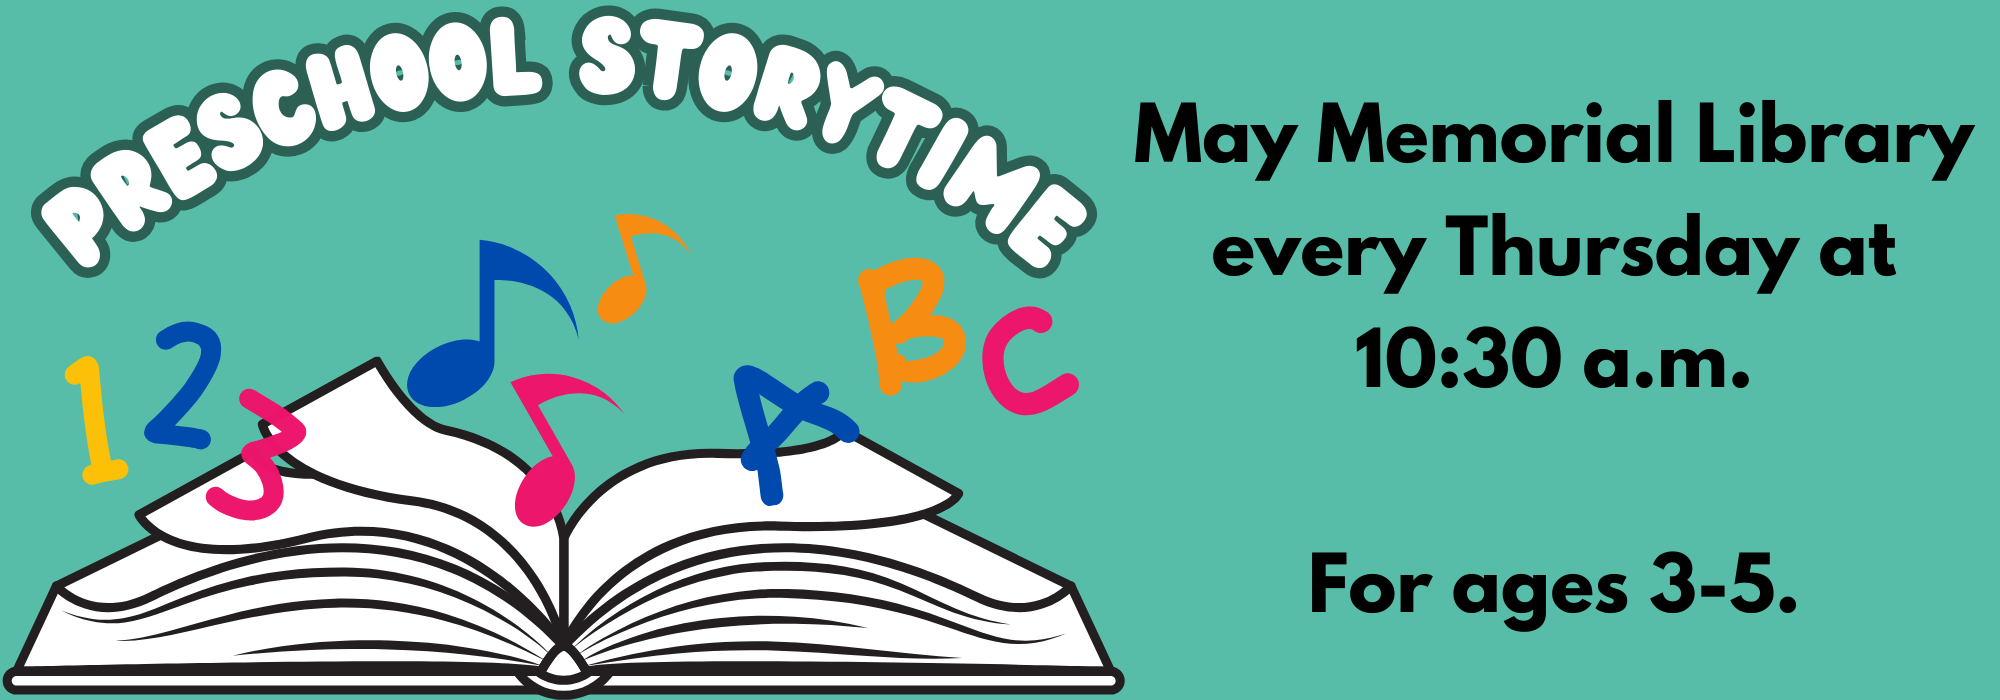 Thursday at 1030 am – Preschool Storytime at May Memorial